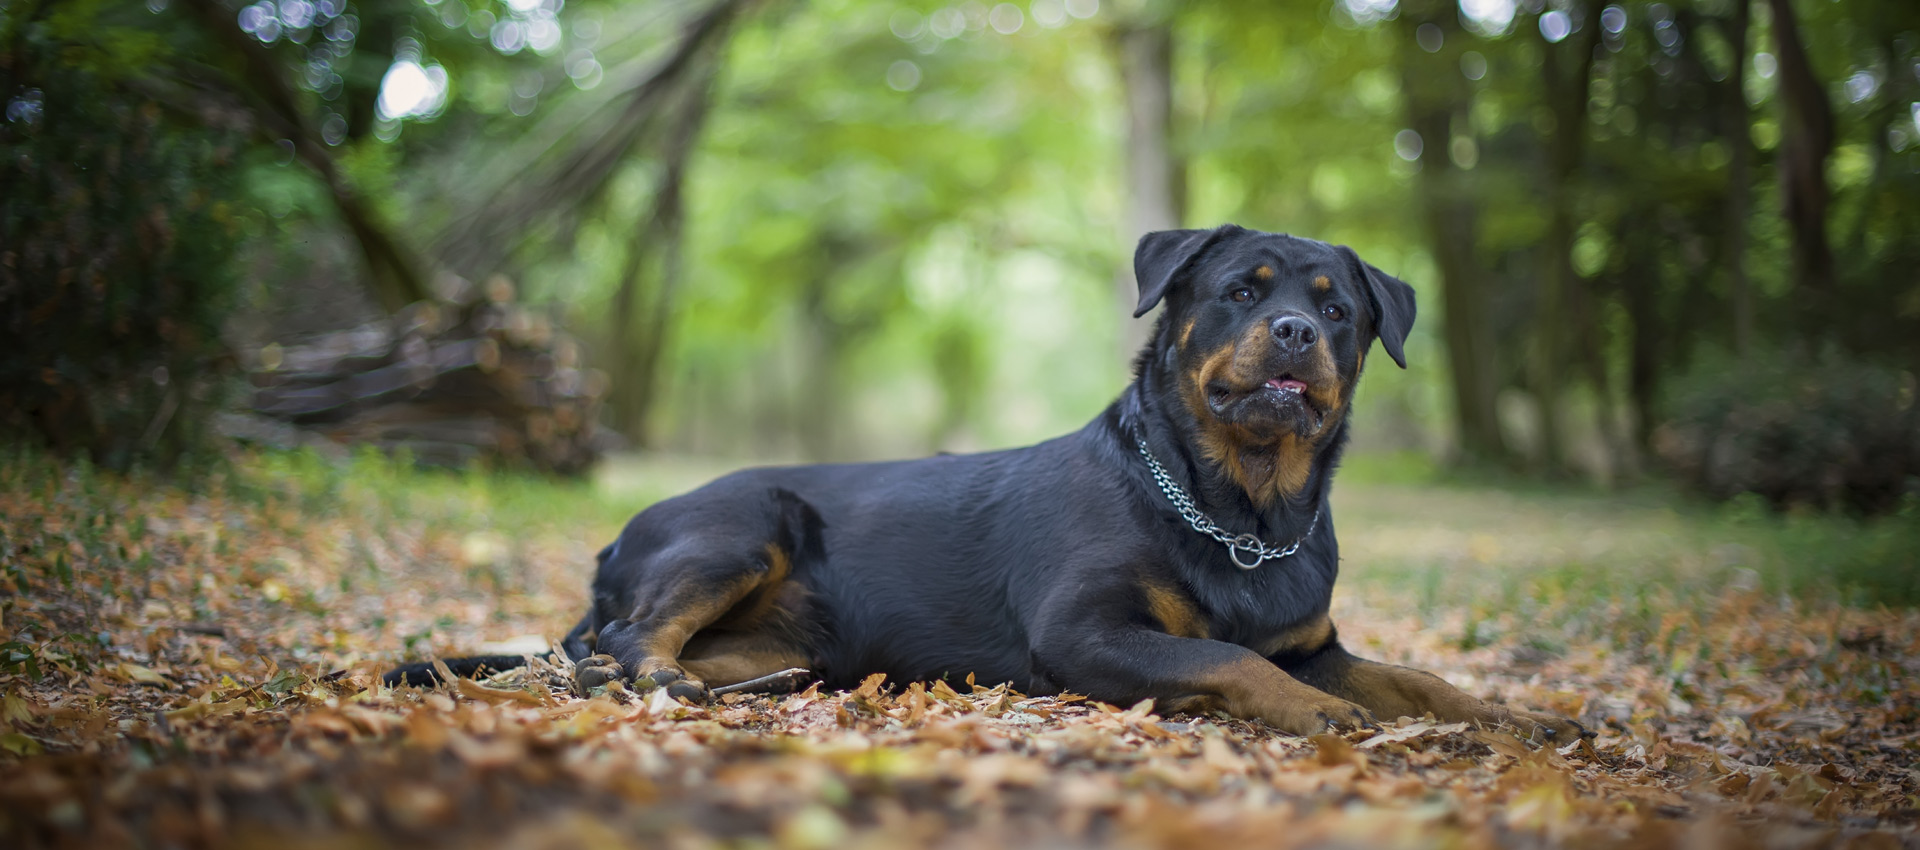 Όλα όσα πρέπει να γνωρίζετε για τη δηλητηρίαση του σκύλου – Αναλυτικά συμπτώματα και αντιμετώπιση